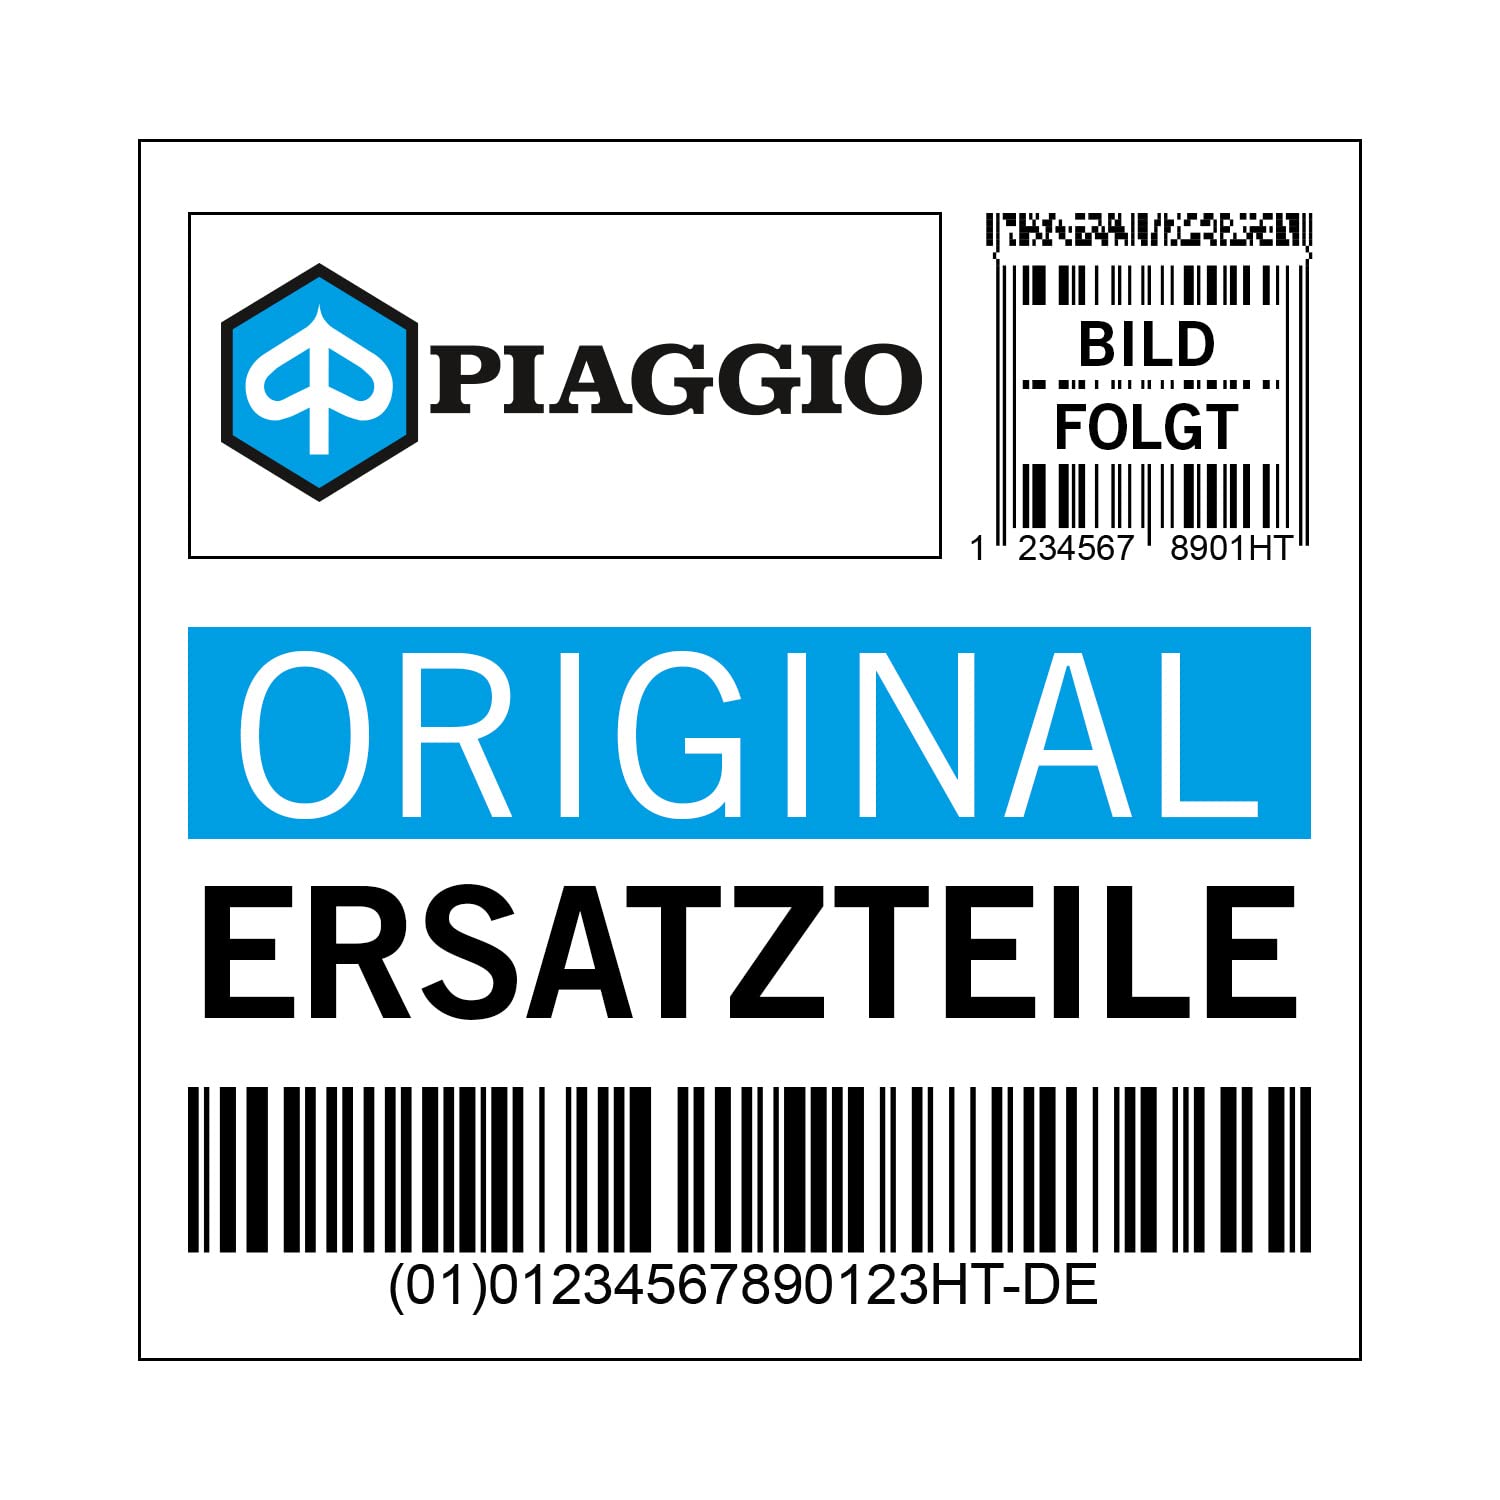 Dekor Piaggio Emblem, 125 i.e. für Fly New, 675140 von Maxtuned